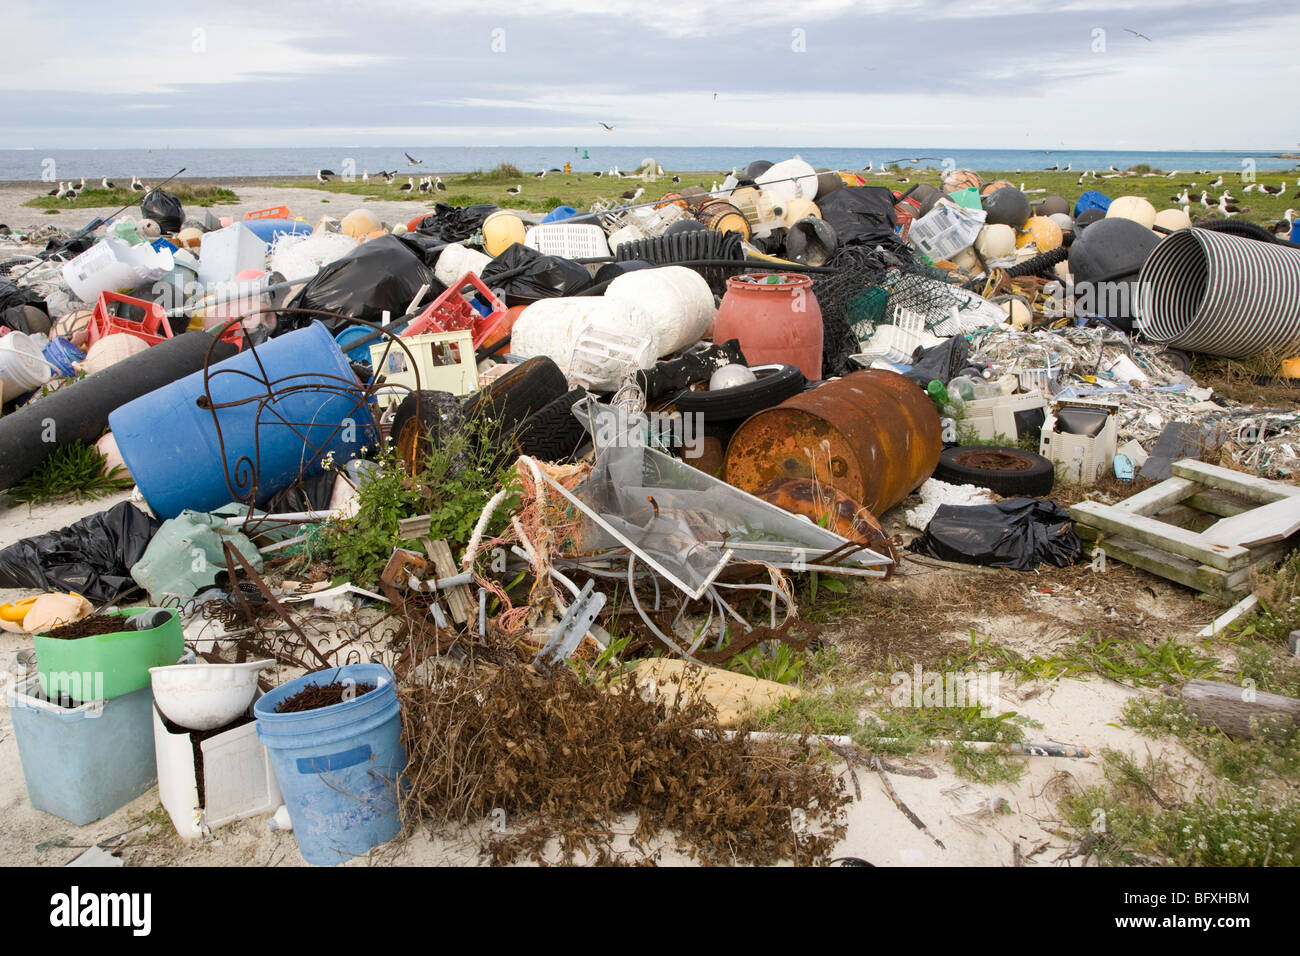 Les débris marins portés à l'atoll de Midway par les courants marins, recueillies pour être expédiés hors des îles pour le recyclage ou l'élimination Banque D'Images